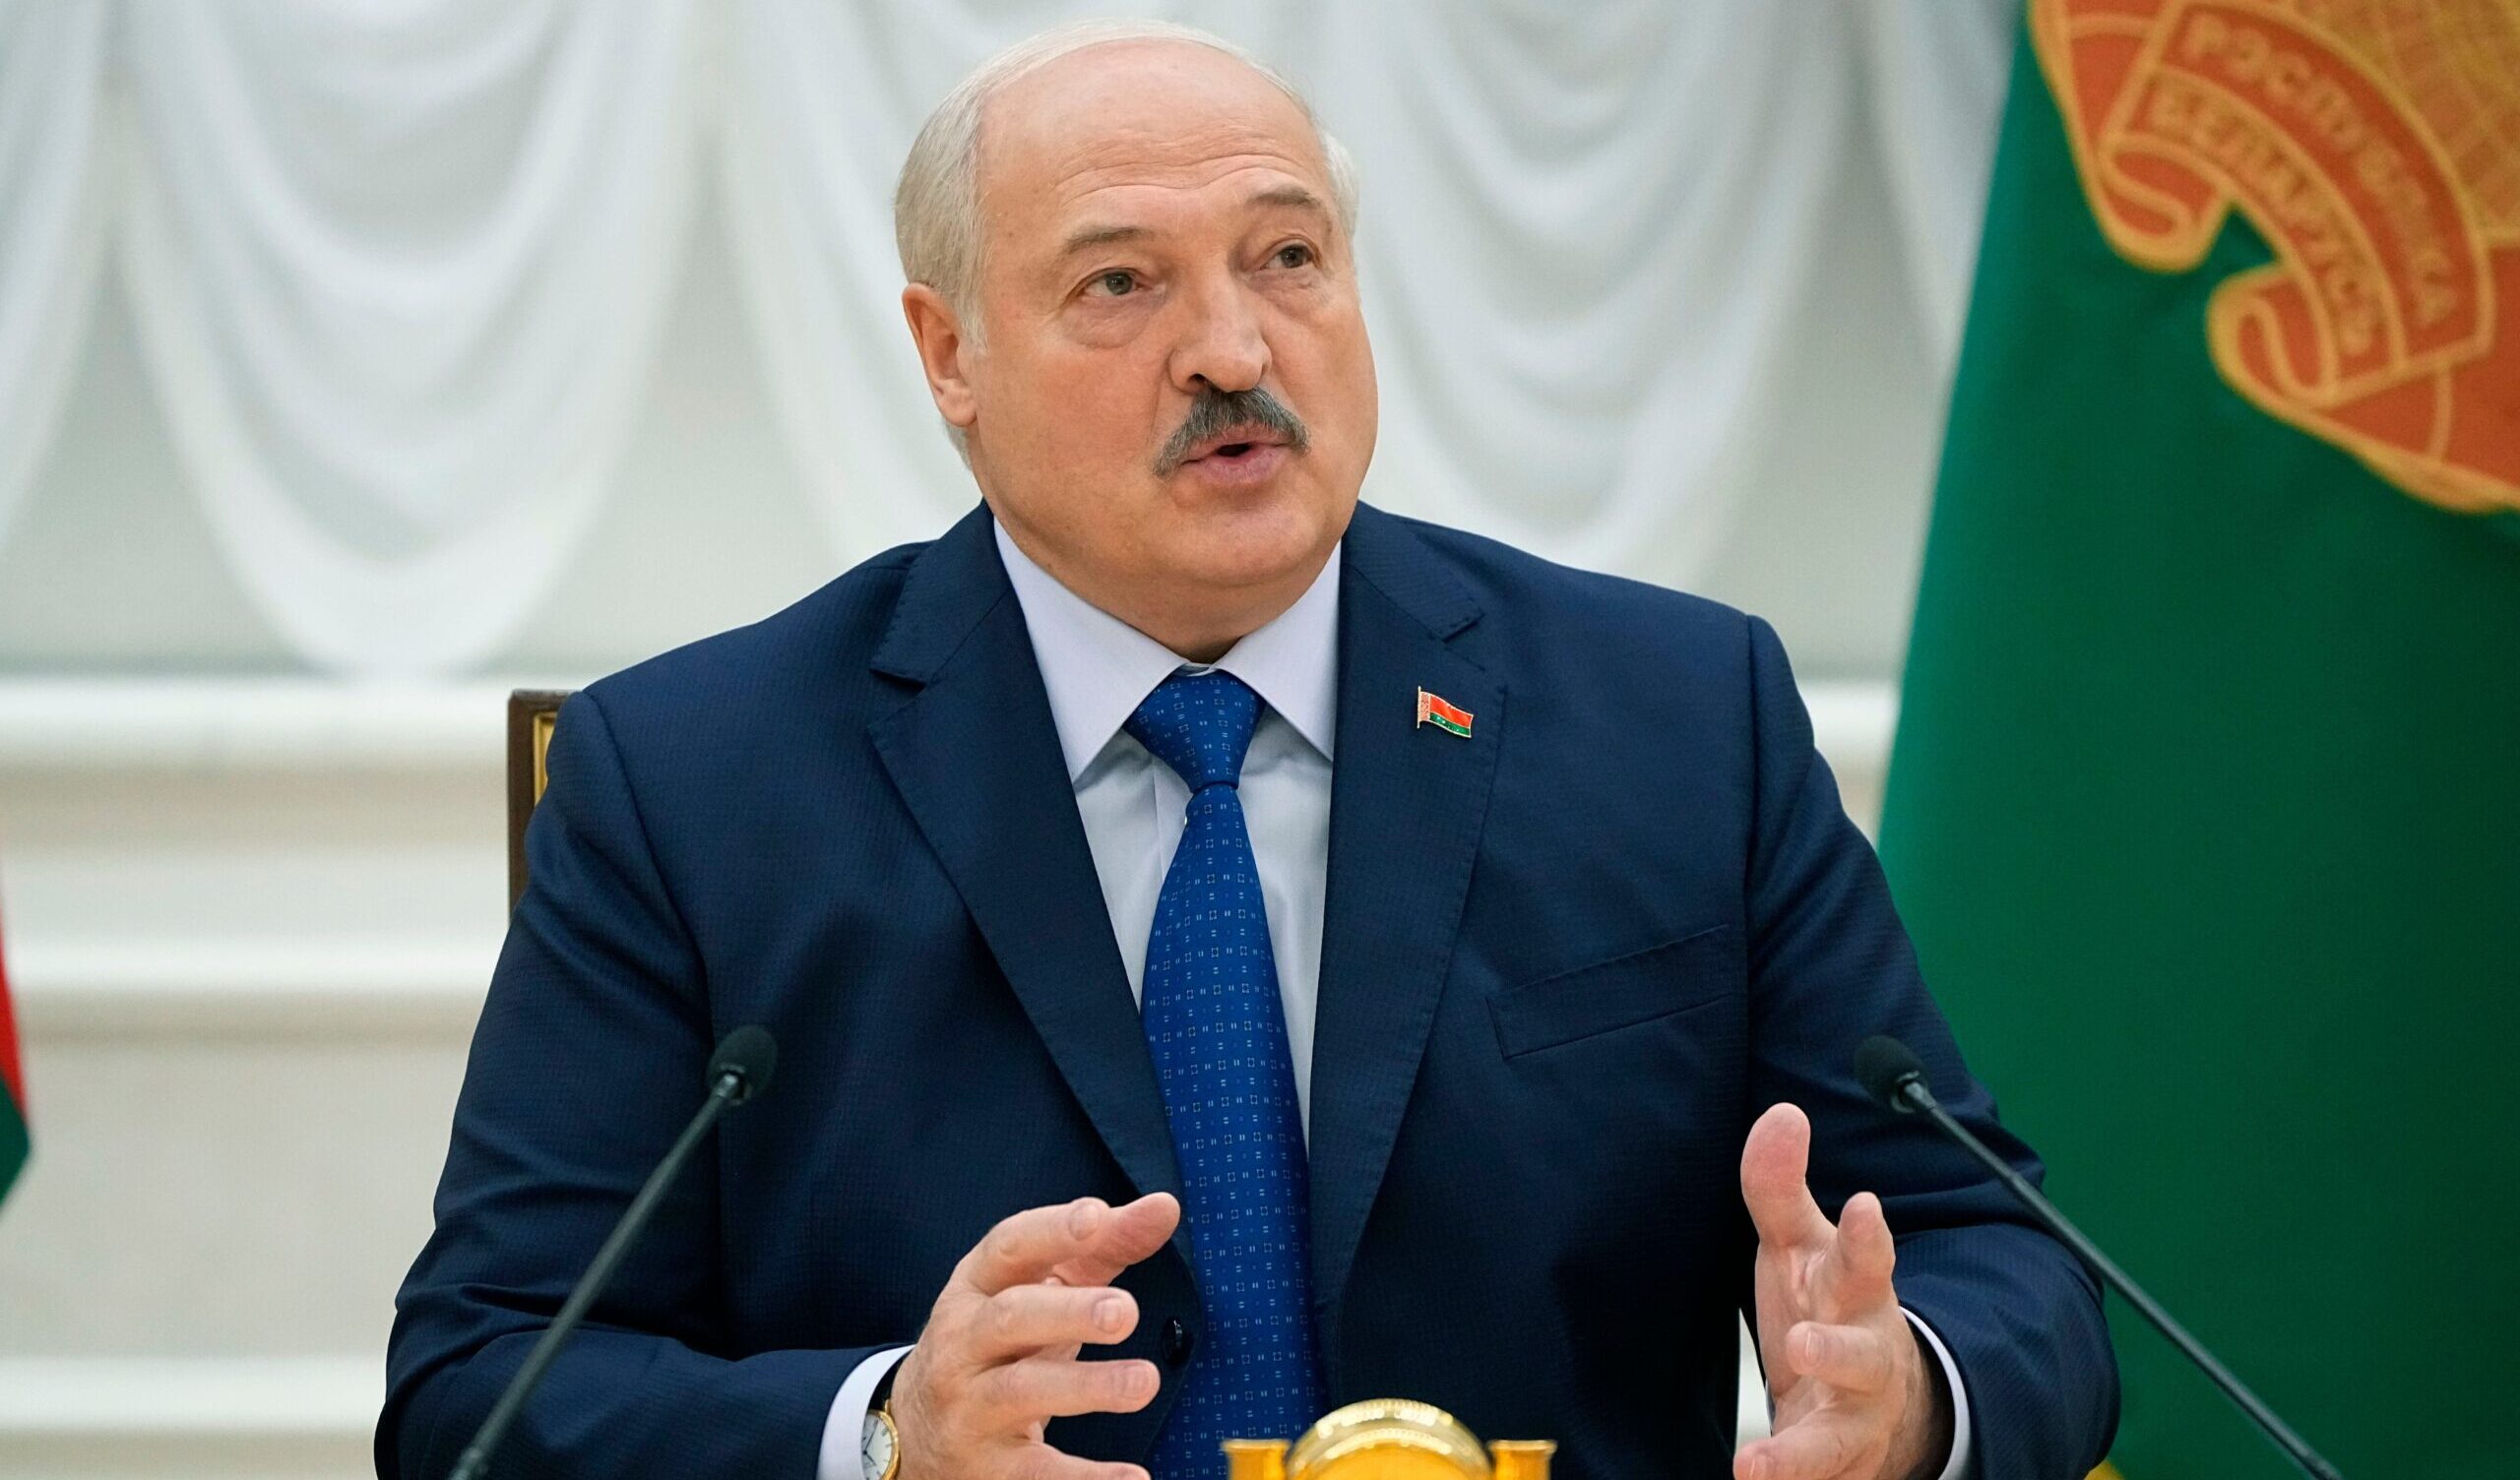 Lukashenko: "La Bielorussia si sta preparando alla guerra"